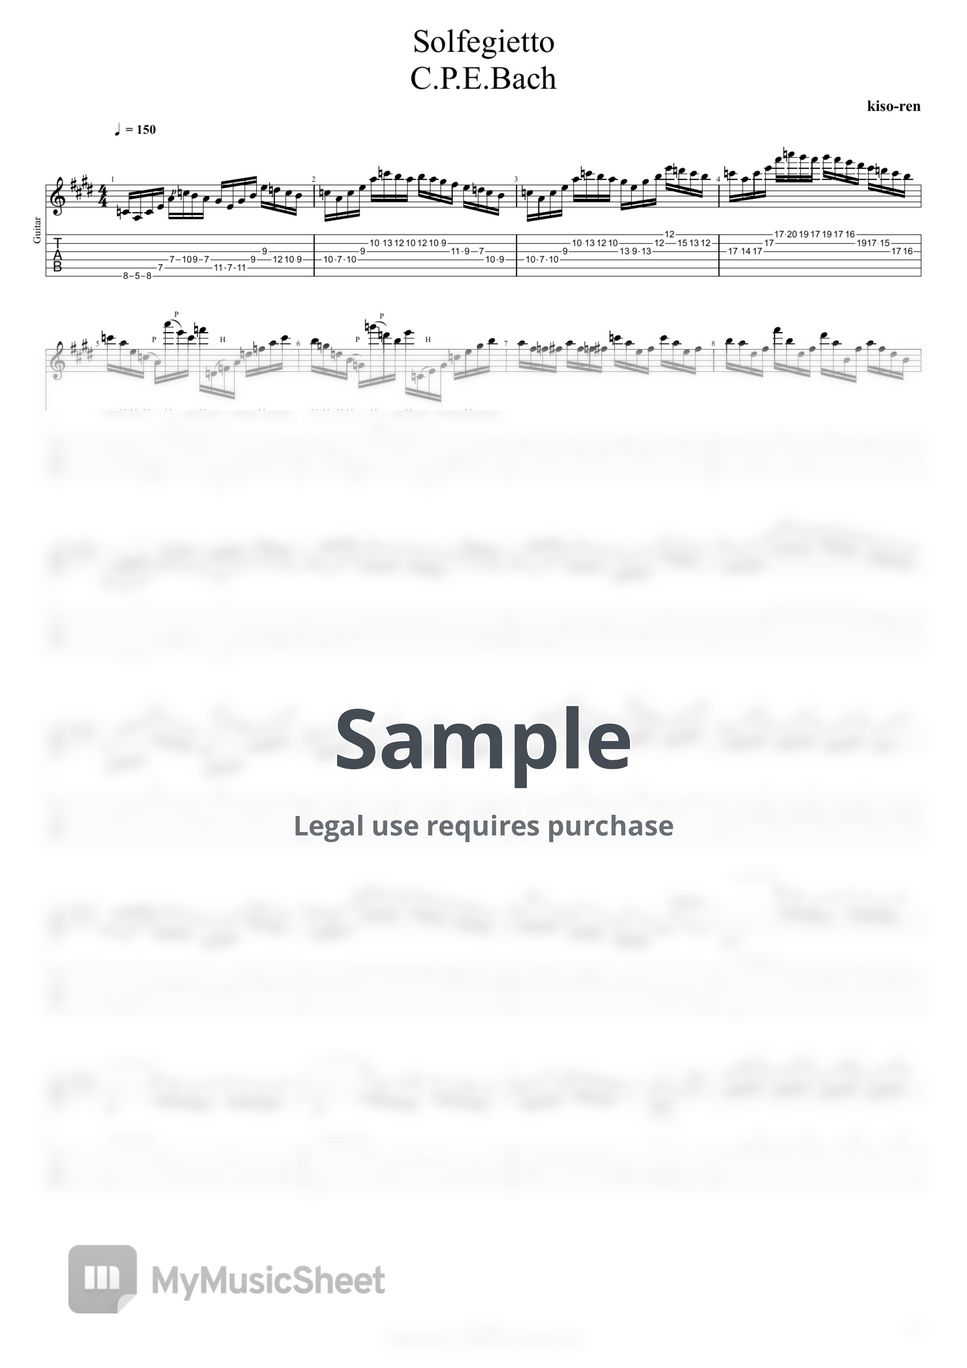 C.P.E.Bach - Solfeggietto C.P.E.Bach (TAB PDF & Guitar Pro files.（gp5）) by Technical Guitar